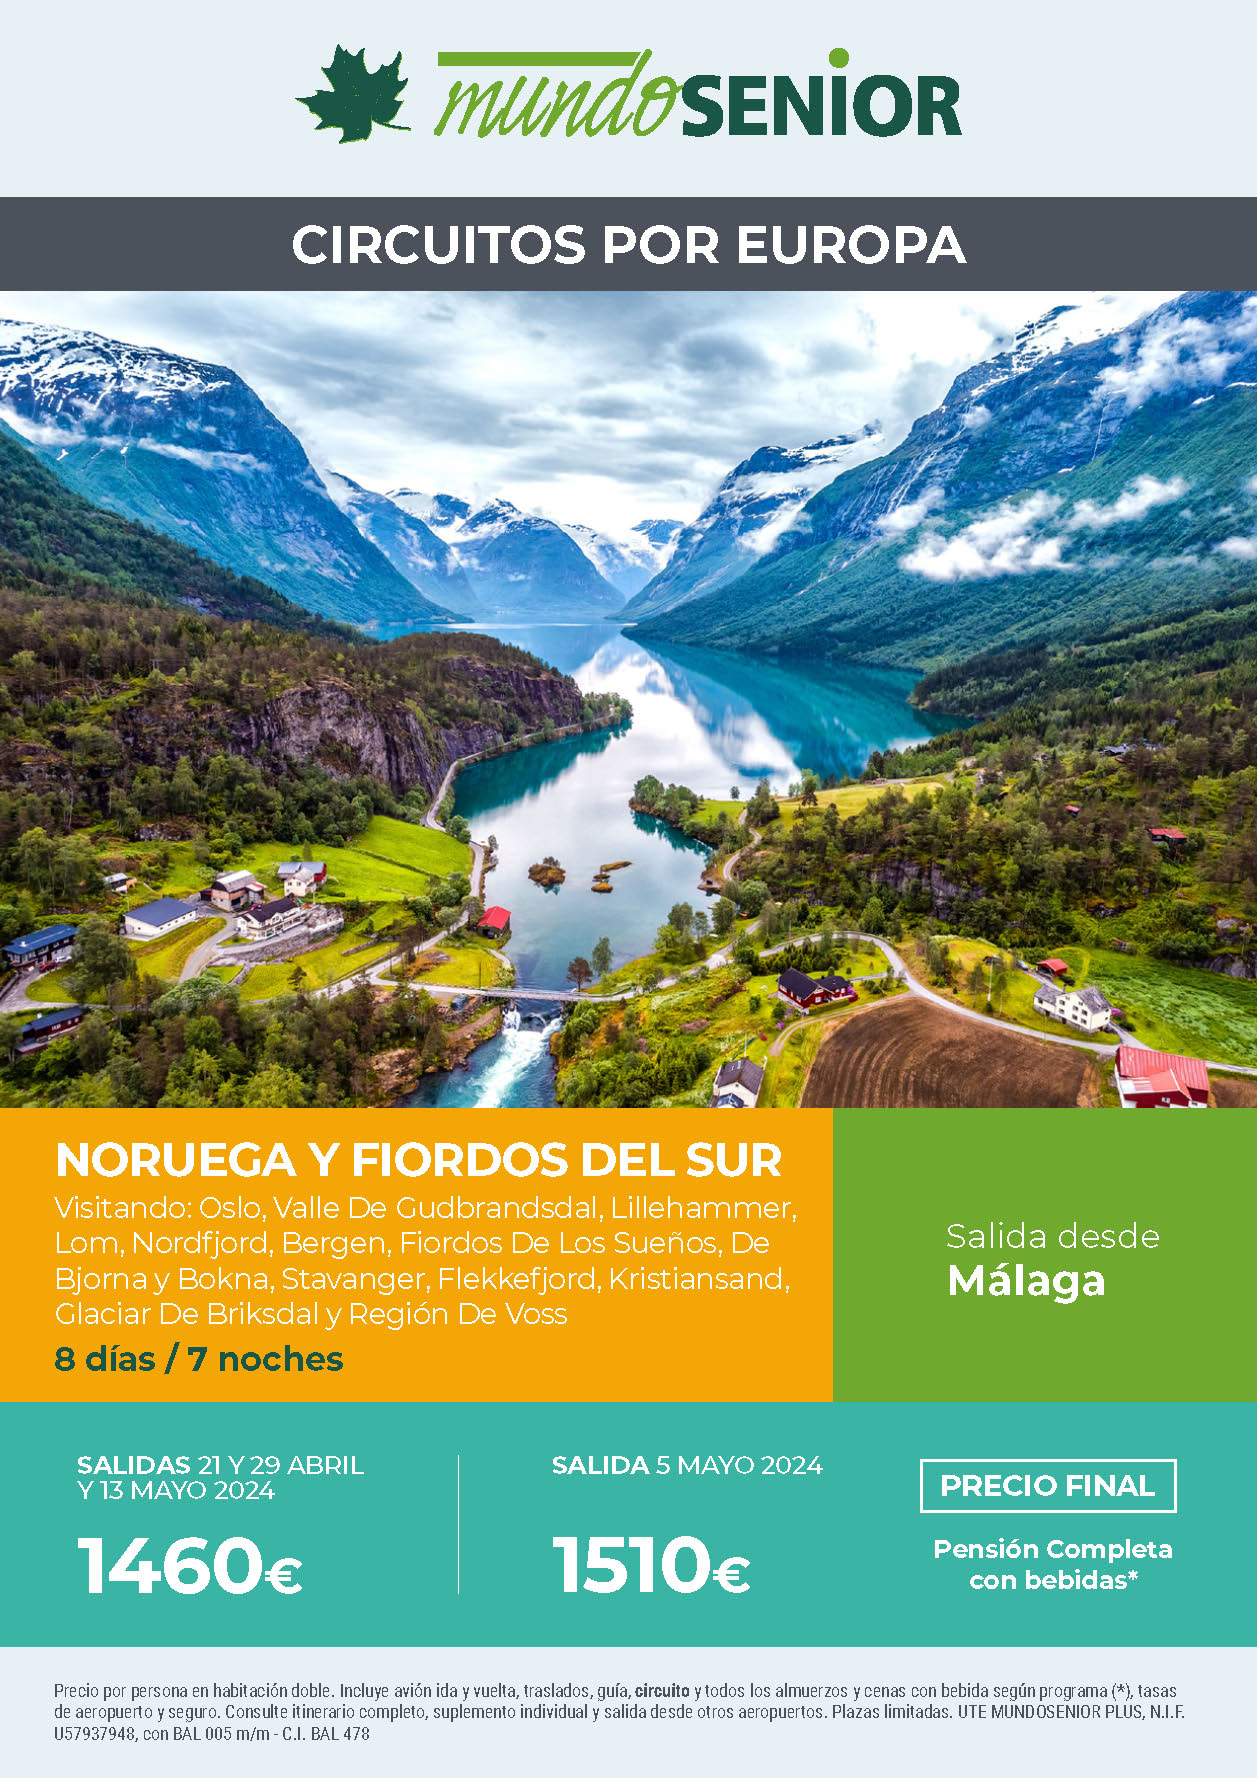 Oferta Mundo Senior circuito Noruega y Fiordos del Sur 8 dias Pension Completa salidas abril mayo 2024 en vuelo directo desde Malaga